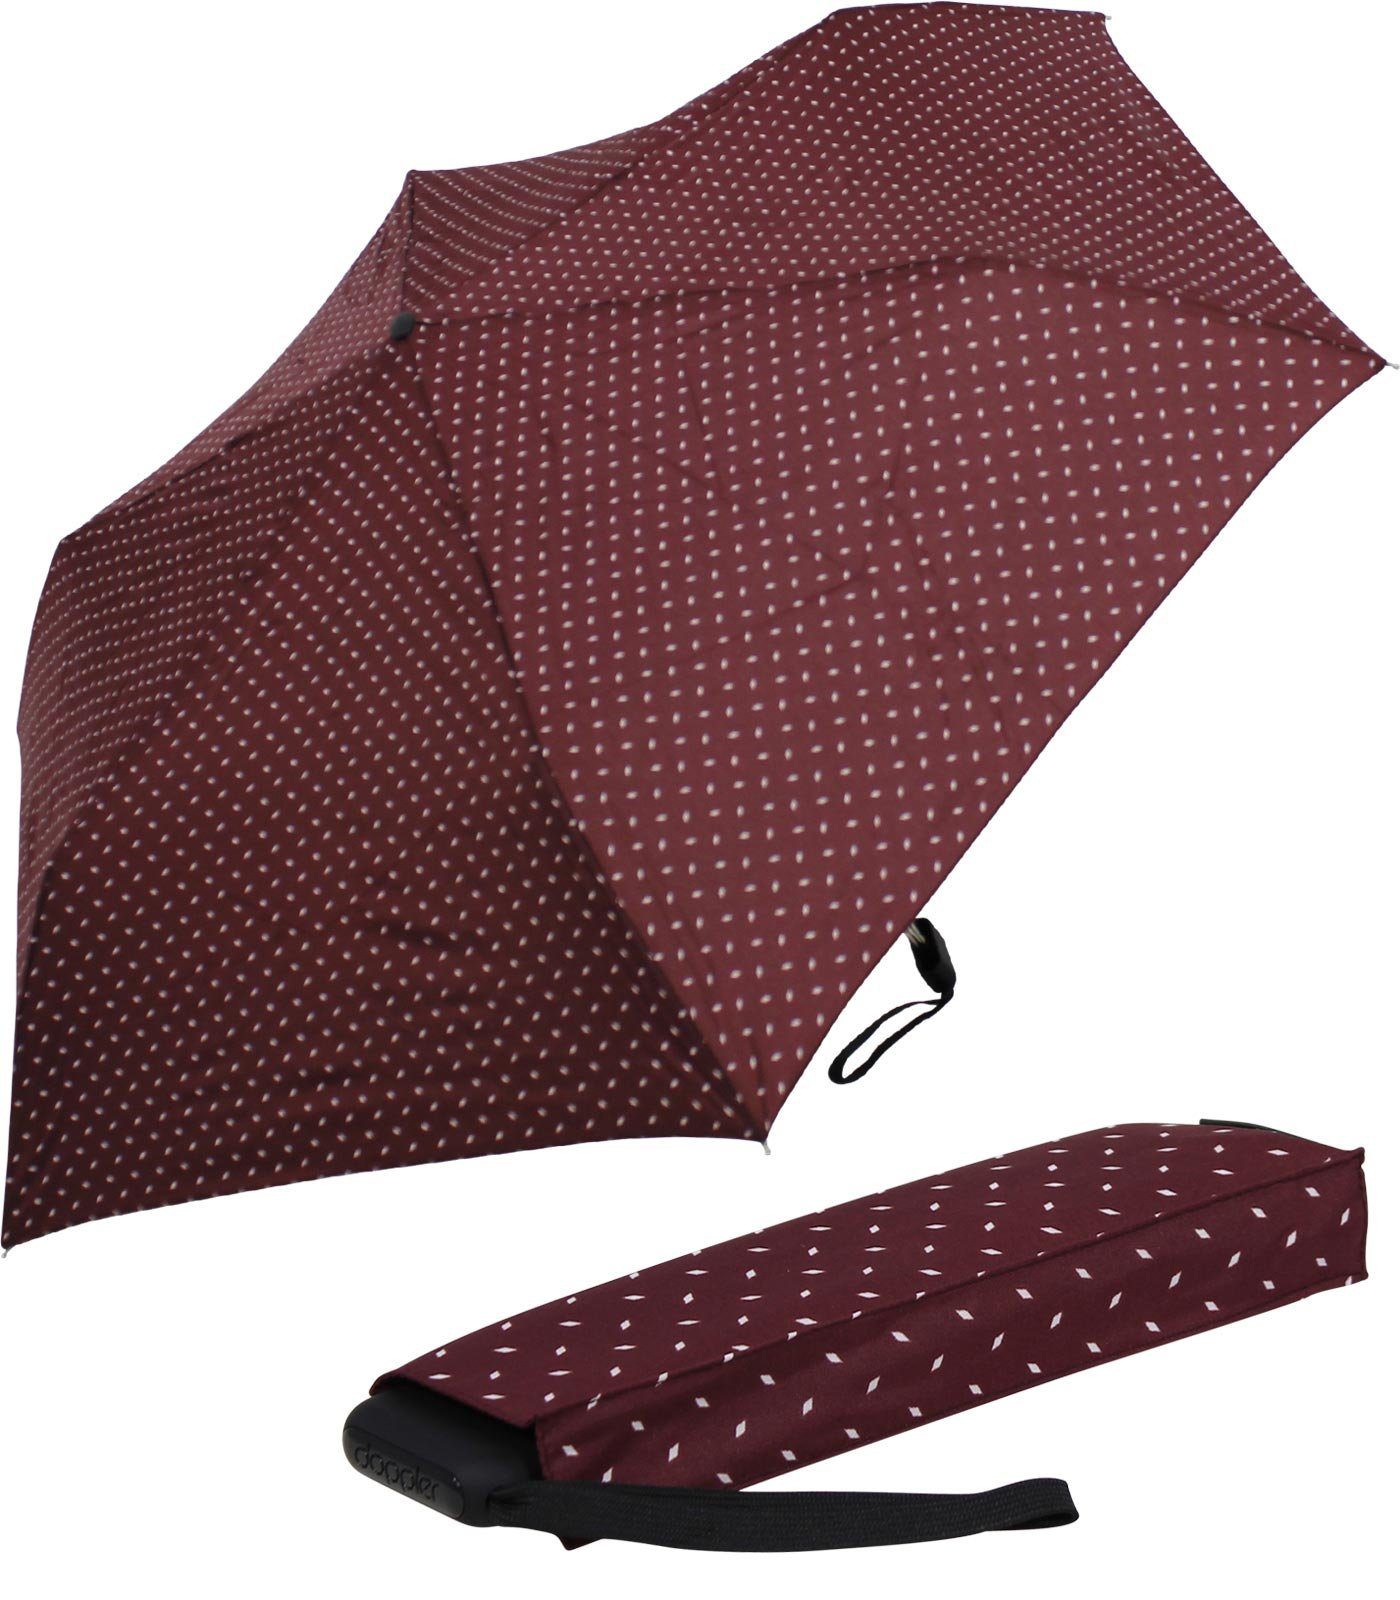 doppler® Taschenregenschirm findet leichter Platz überall und ein jede dieser Begleiter bordeaux für Schirm treue flacher Tasche